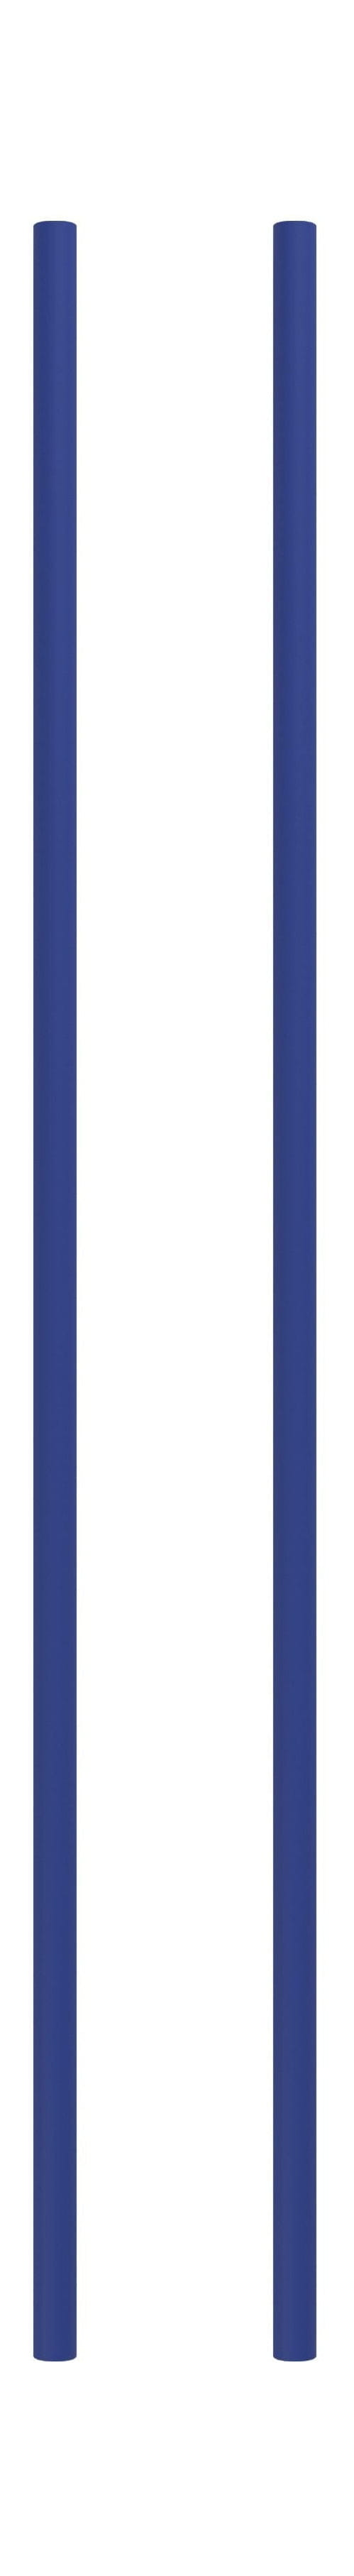 Sistema de estantería Moebe/Pierna de estantería de pared 85 cm de profundidad azul, conjunto de 2